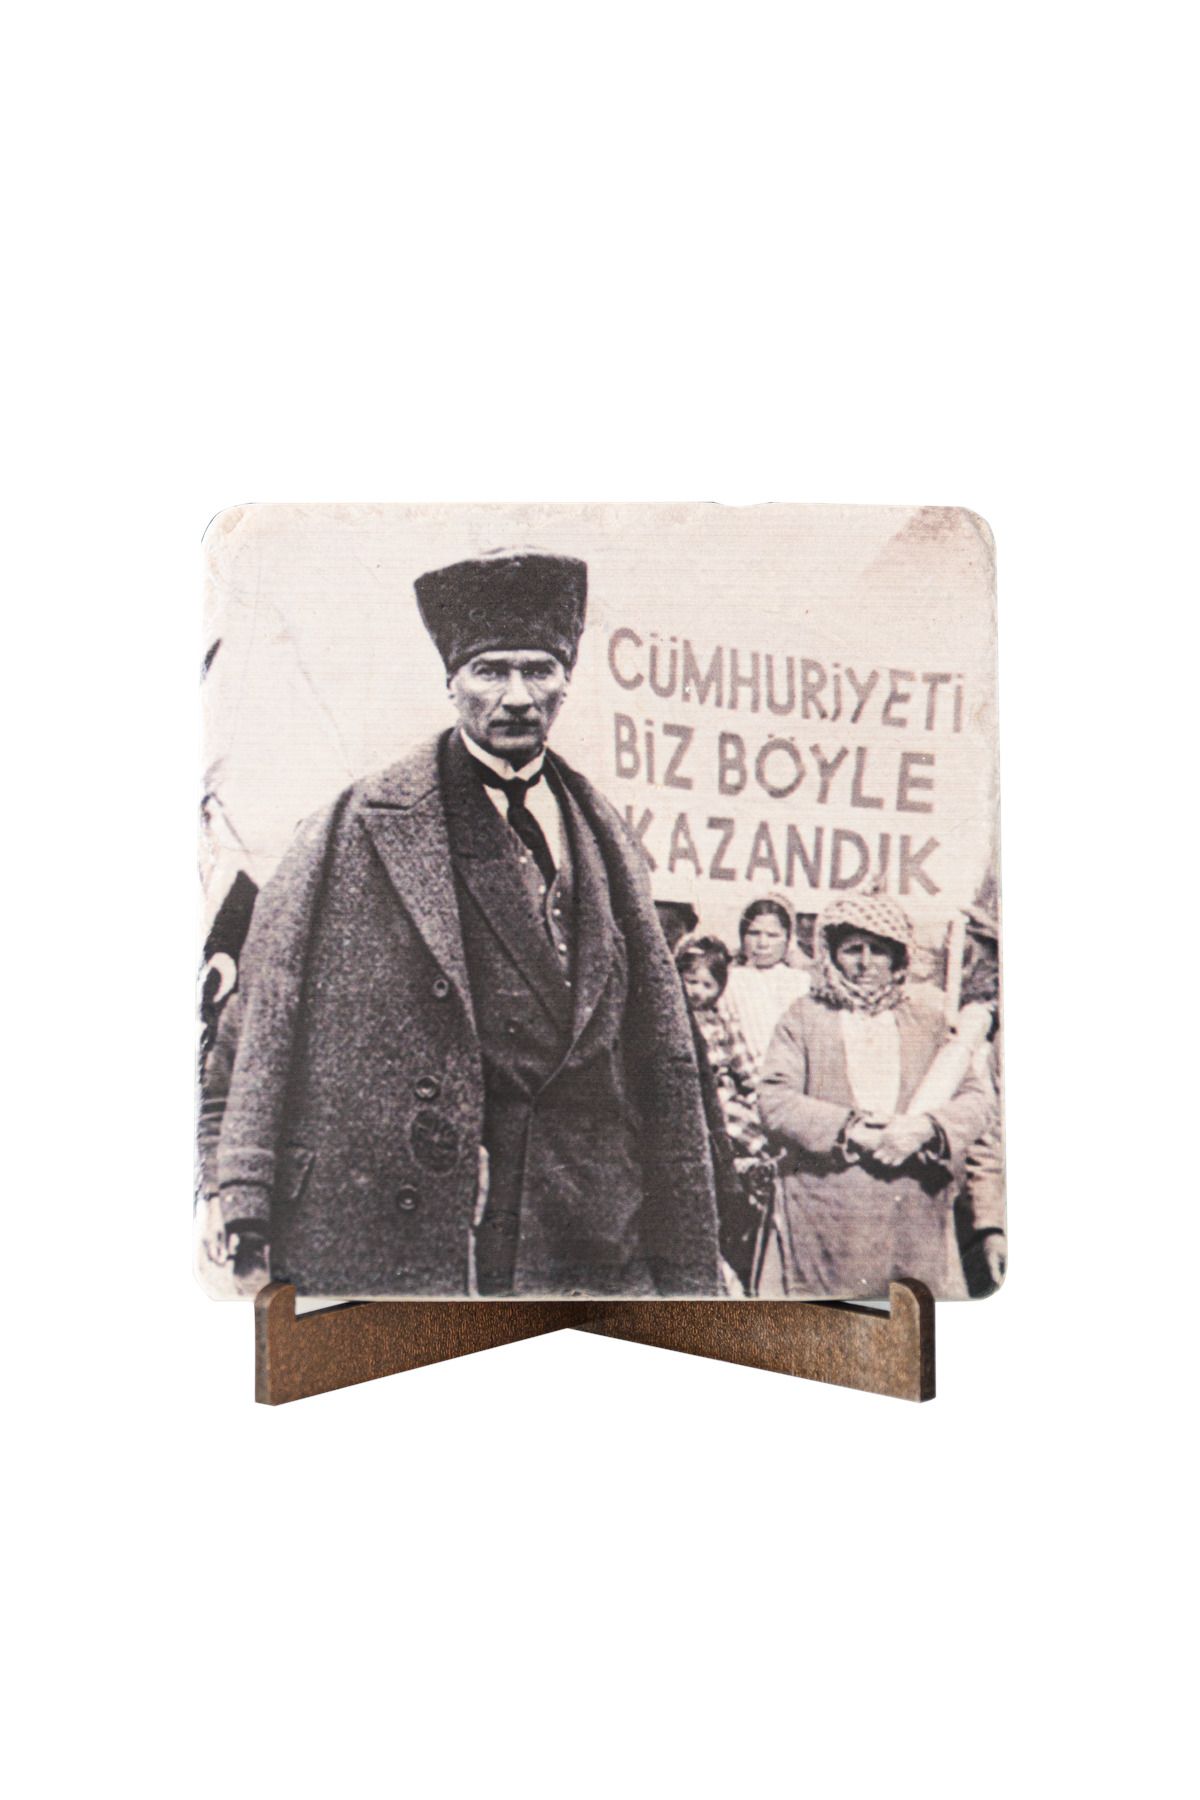 anadolia Atatürk Sözleri Cumhuriyeti Böyle Kazandık Traverten Pano